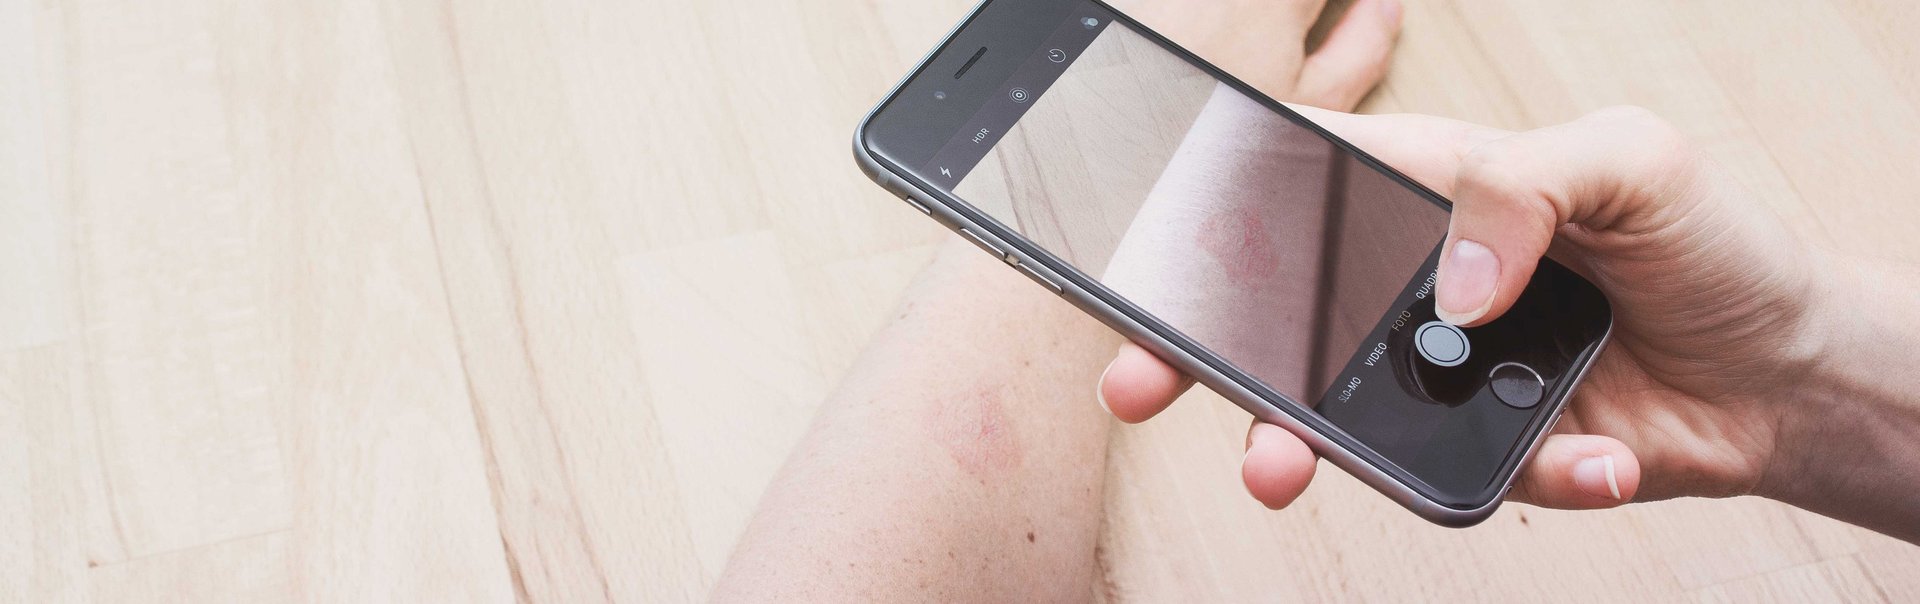 Eine Person scannt ein Muttermal auf dem Arm mit dem Smartphone ab.